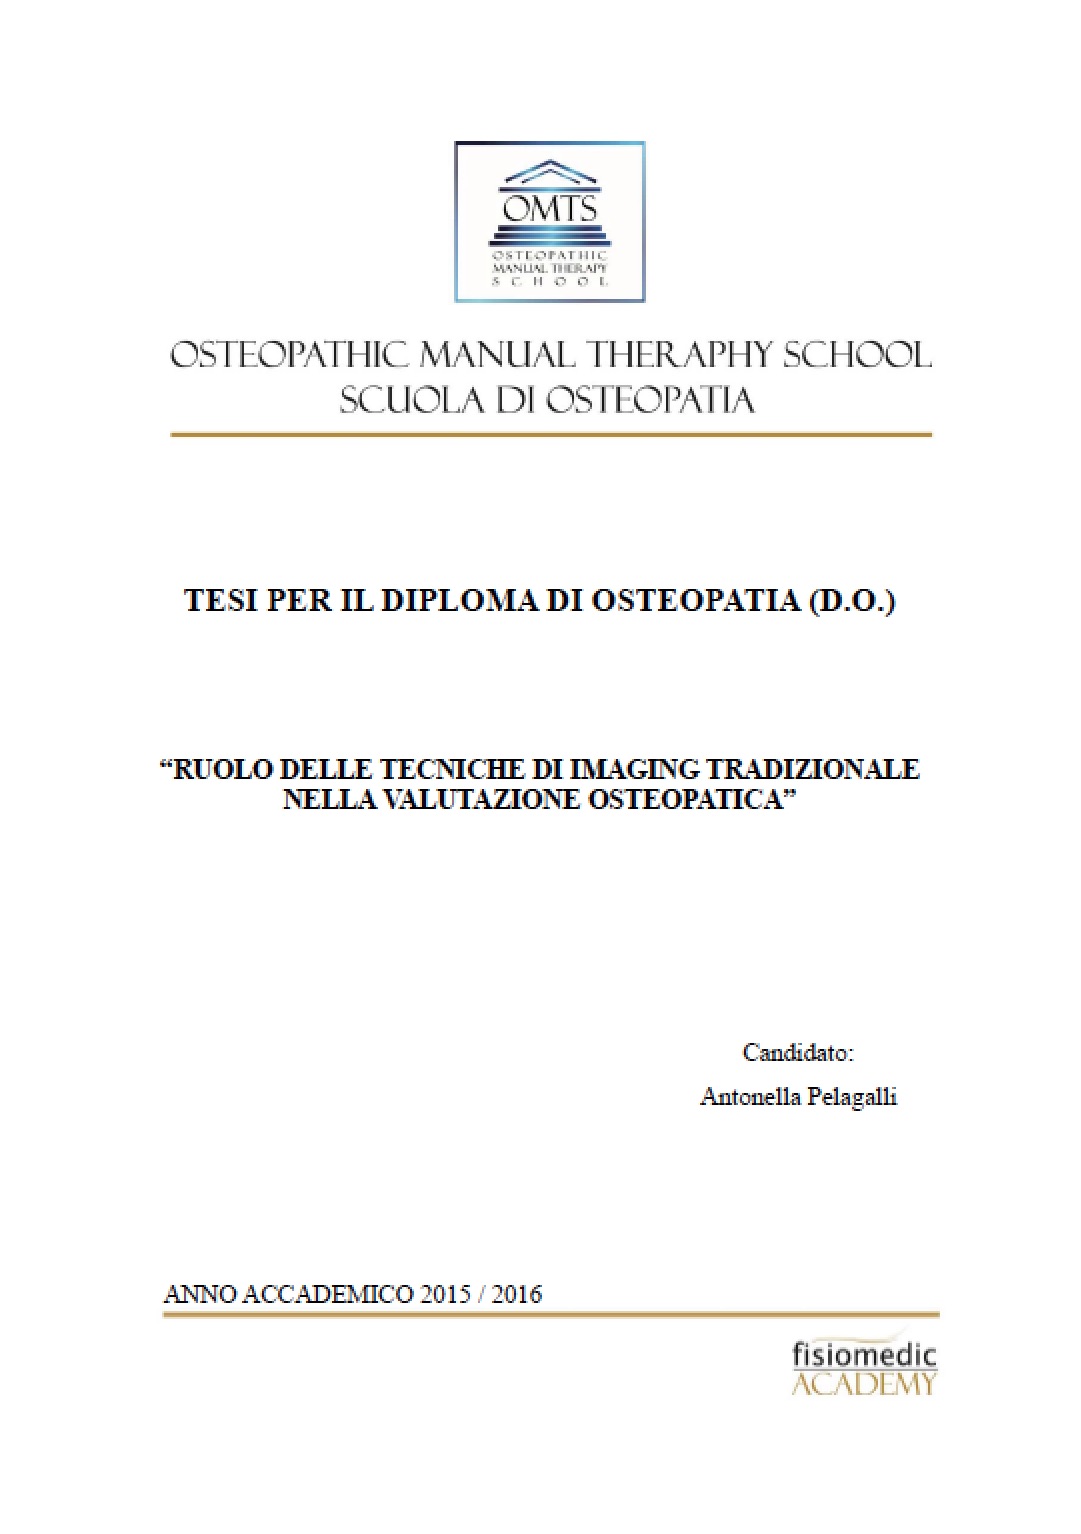 Antonella Pelagalli Tesi Diploma Osteopatia 2016